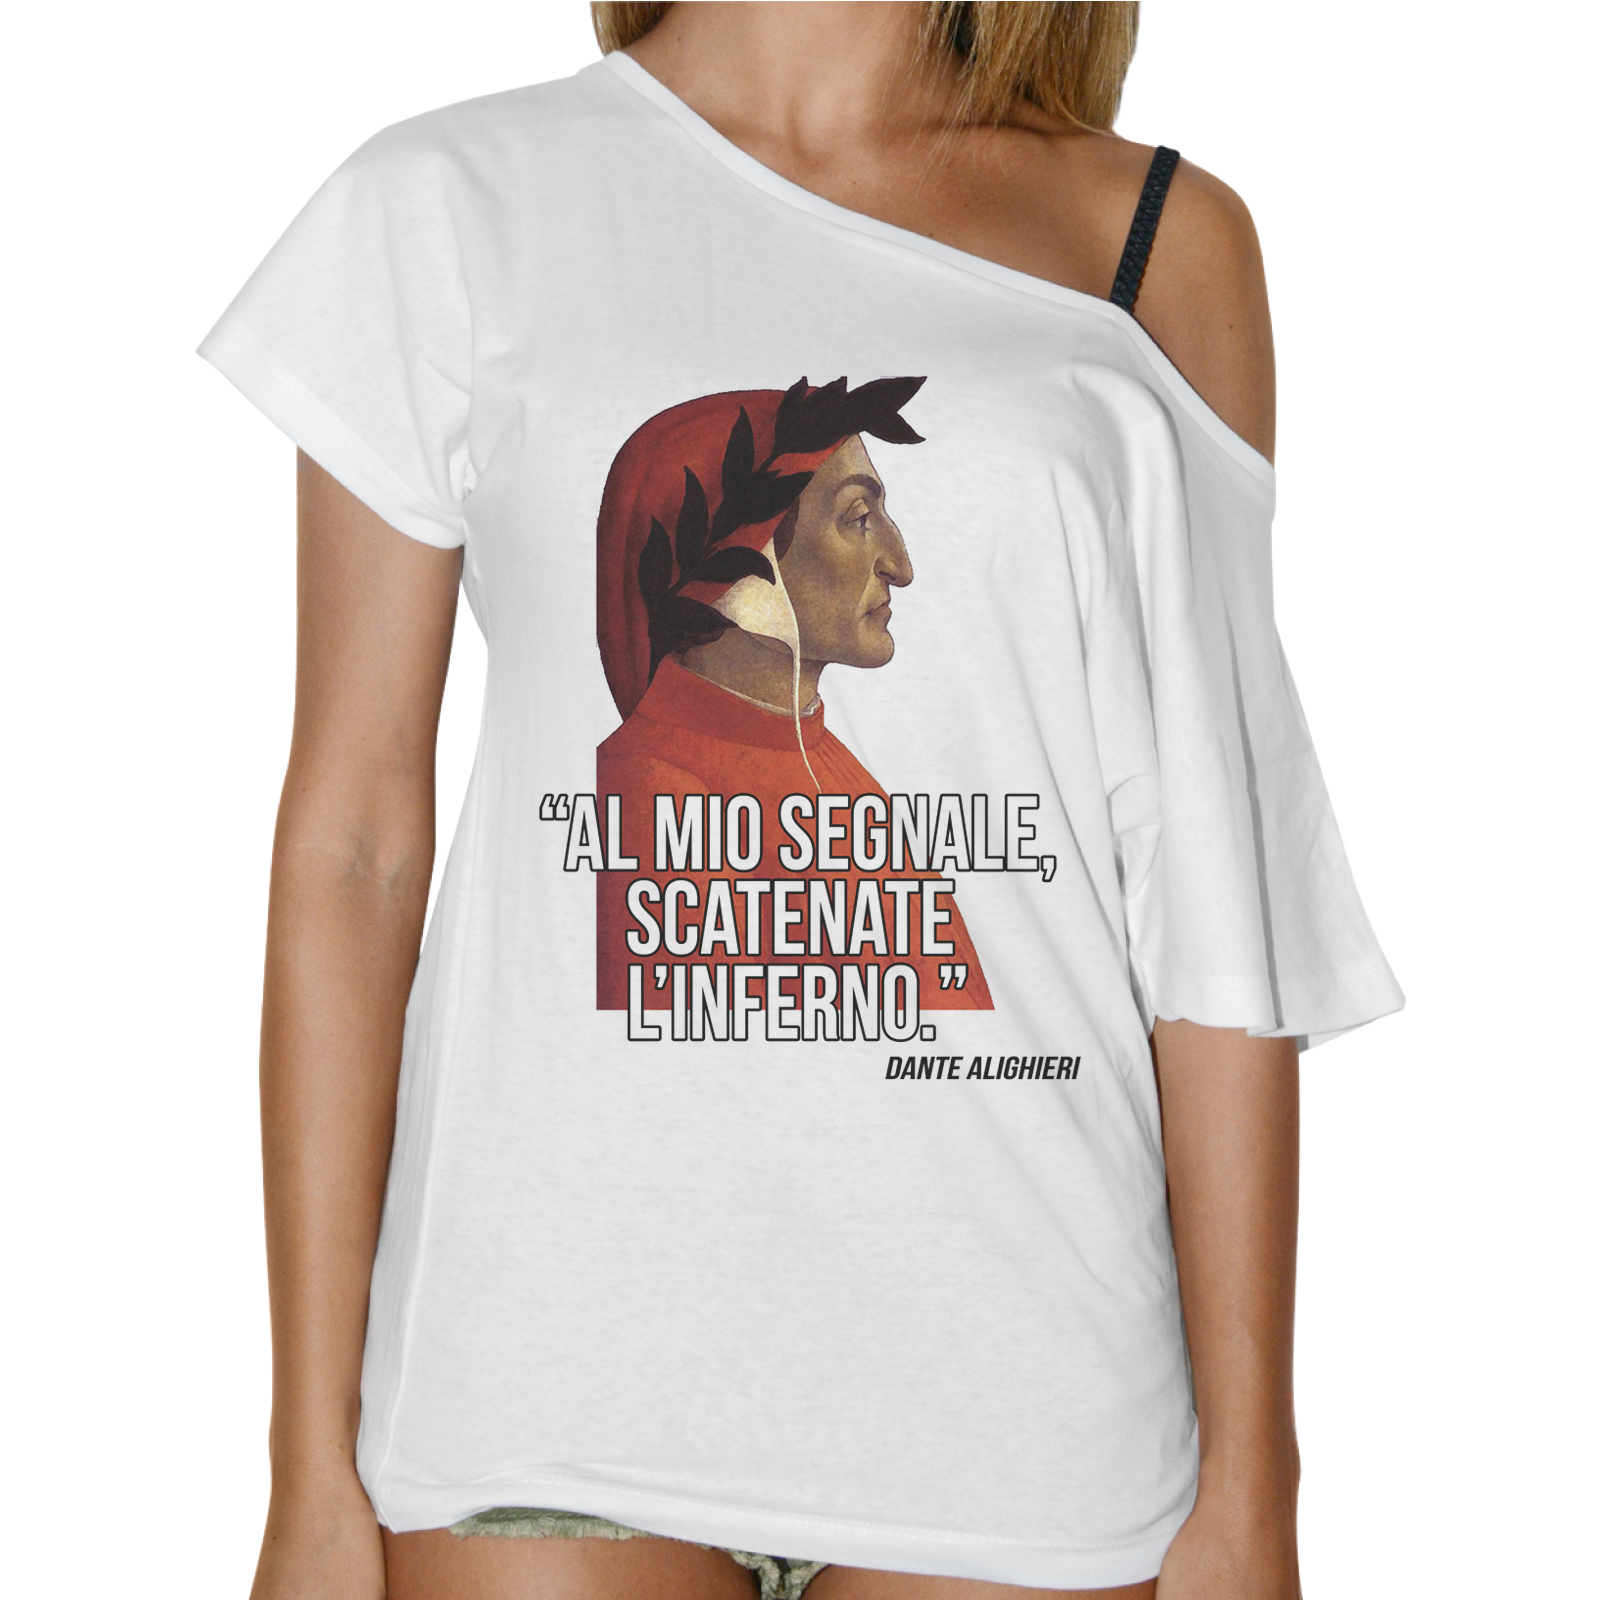 T-Shirt Donna Collo Barca SCATENATE L'INFERNO